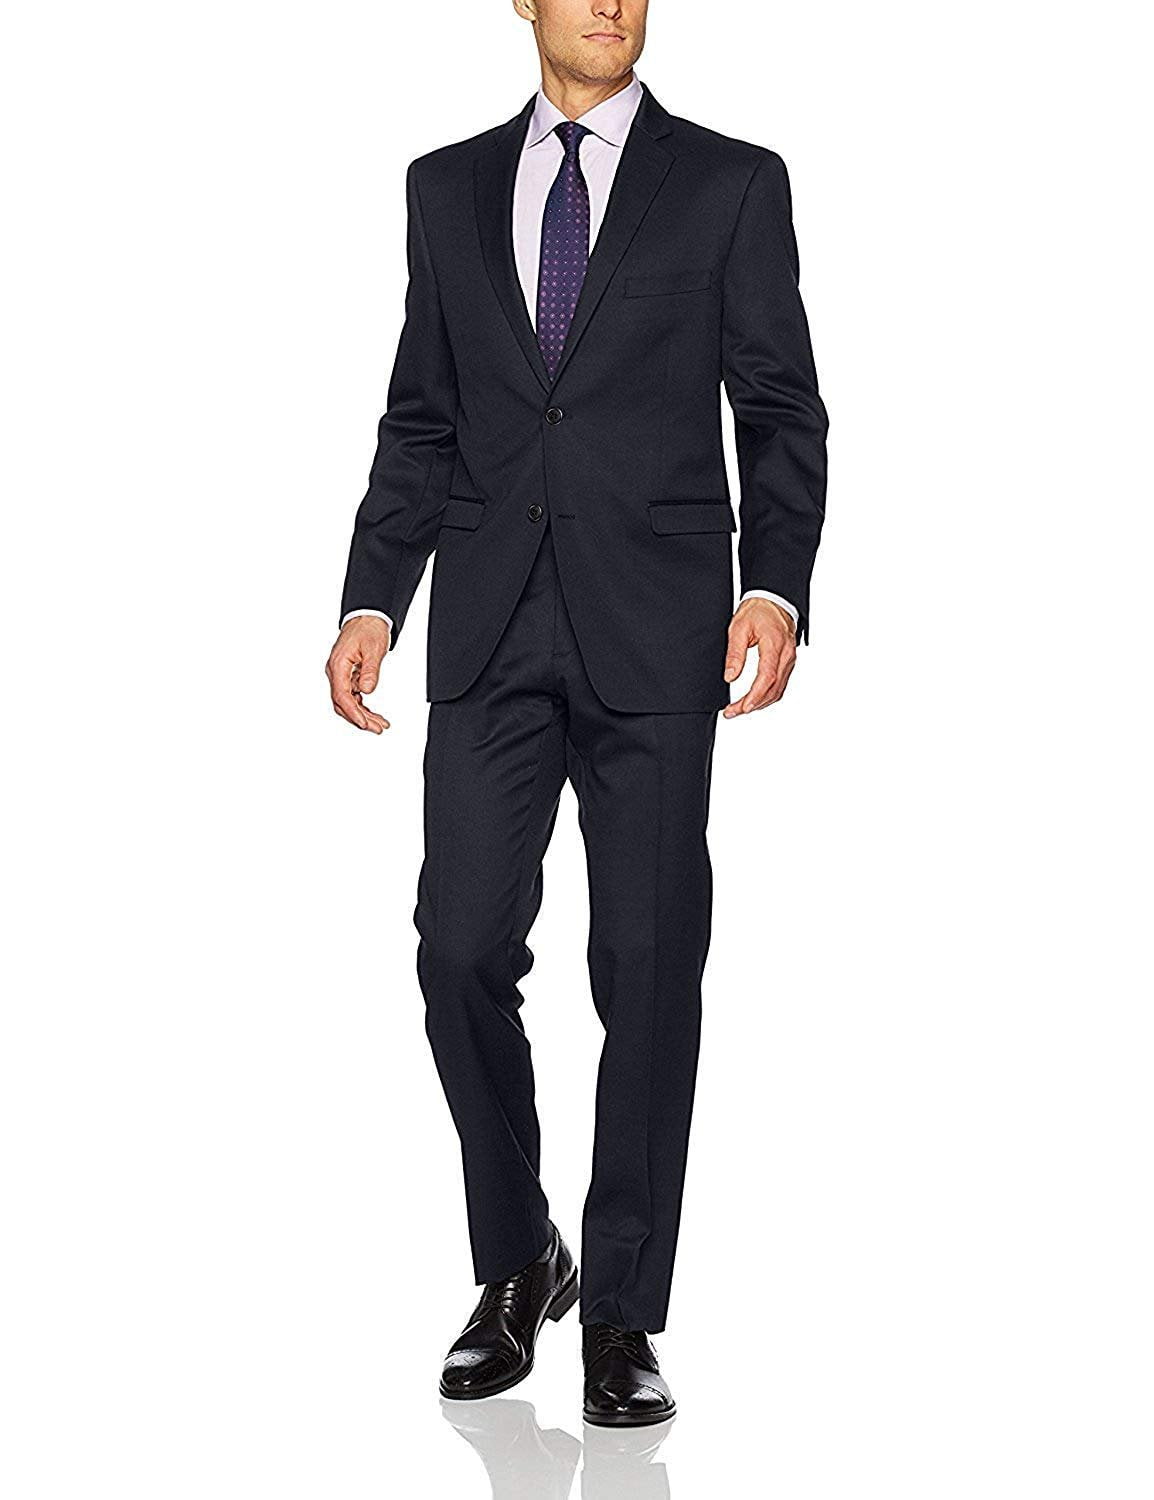 Adam Baker Fame Label Collection Men's 60503 Slim Fit 2-Piece Suit ...